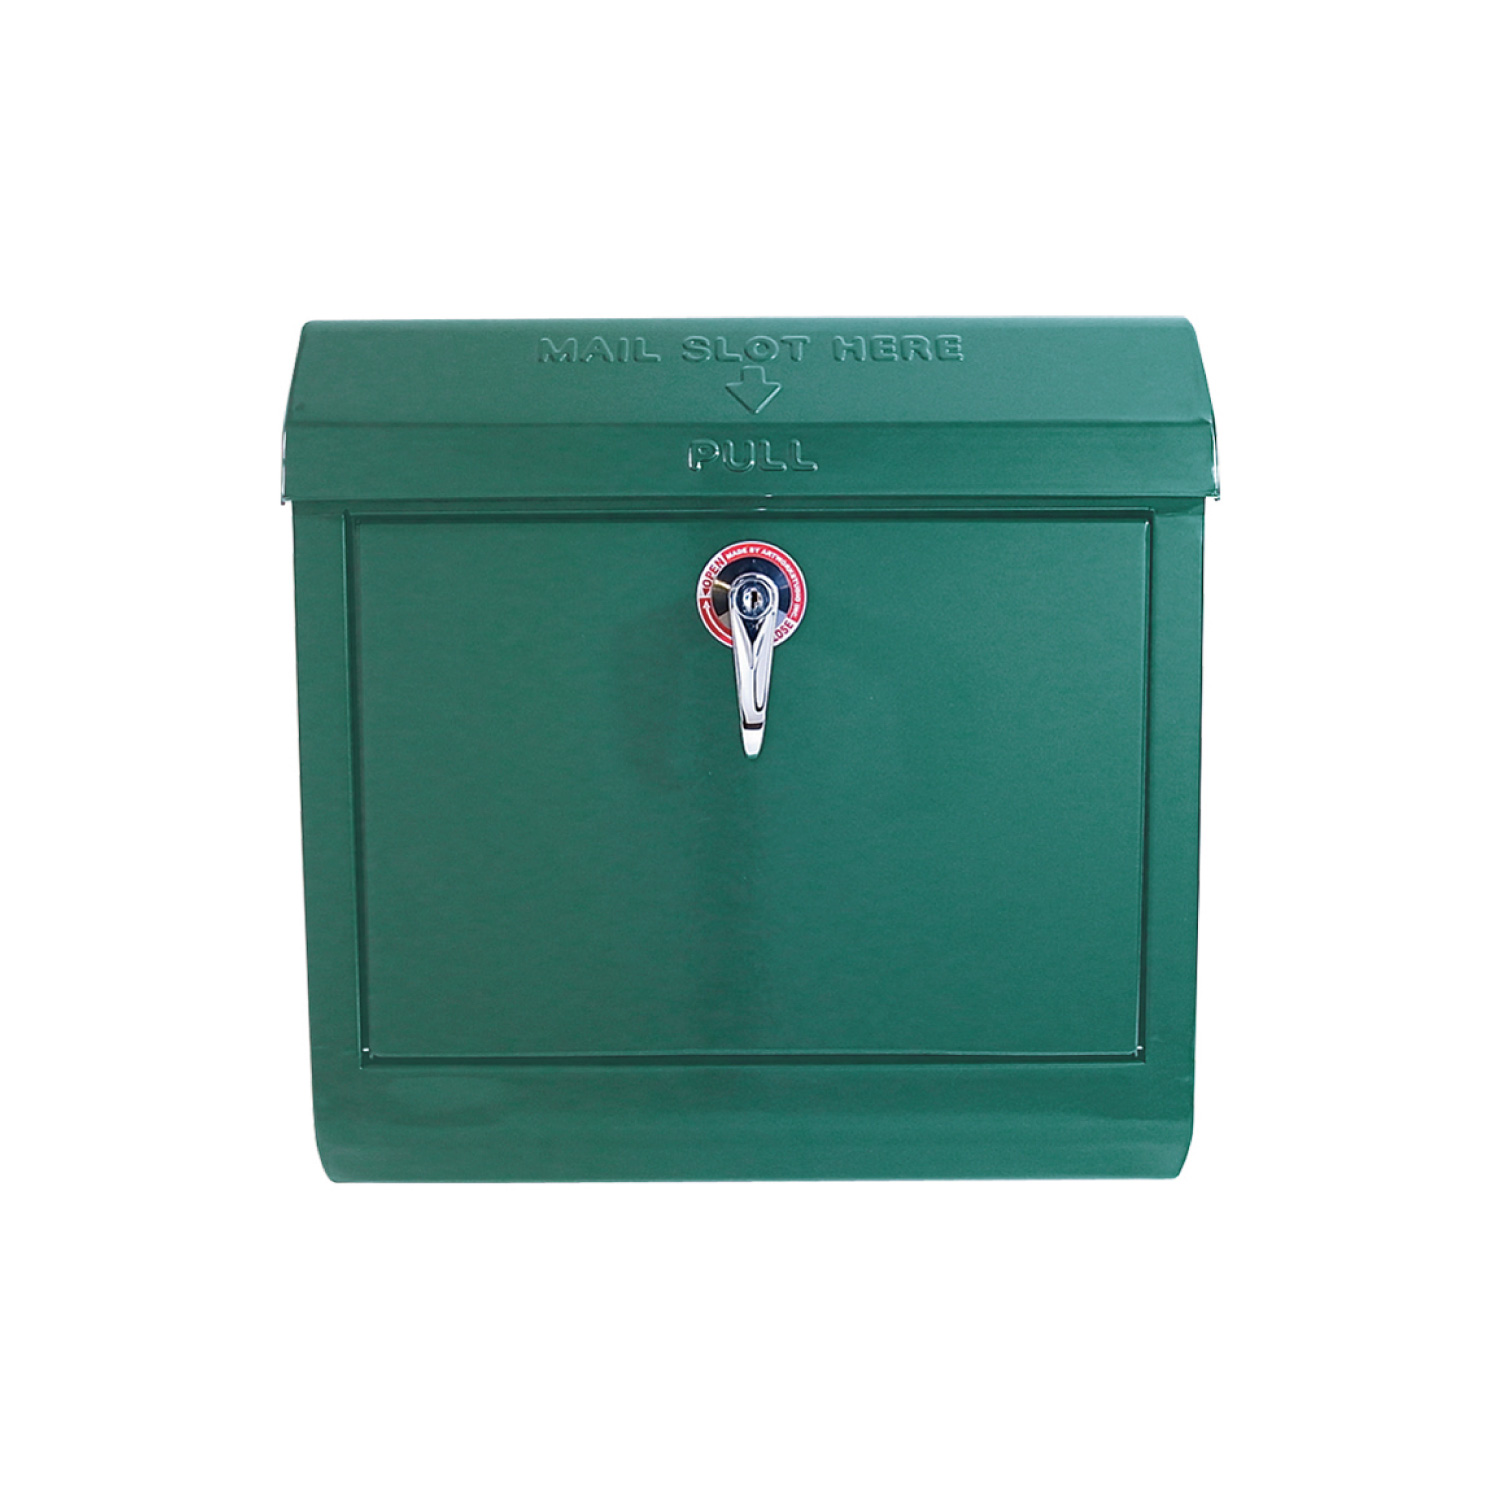 Mail box 1